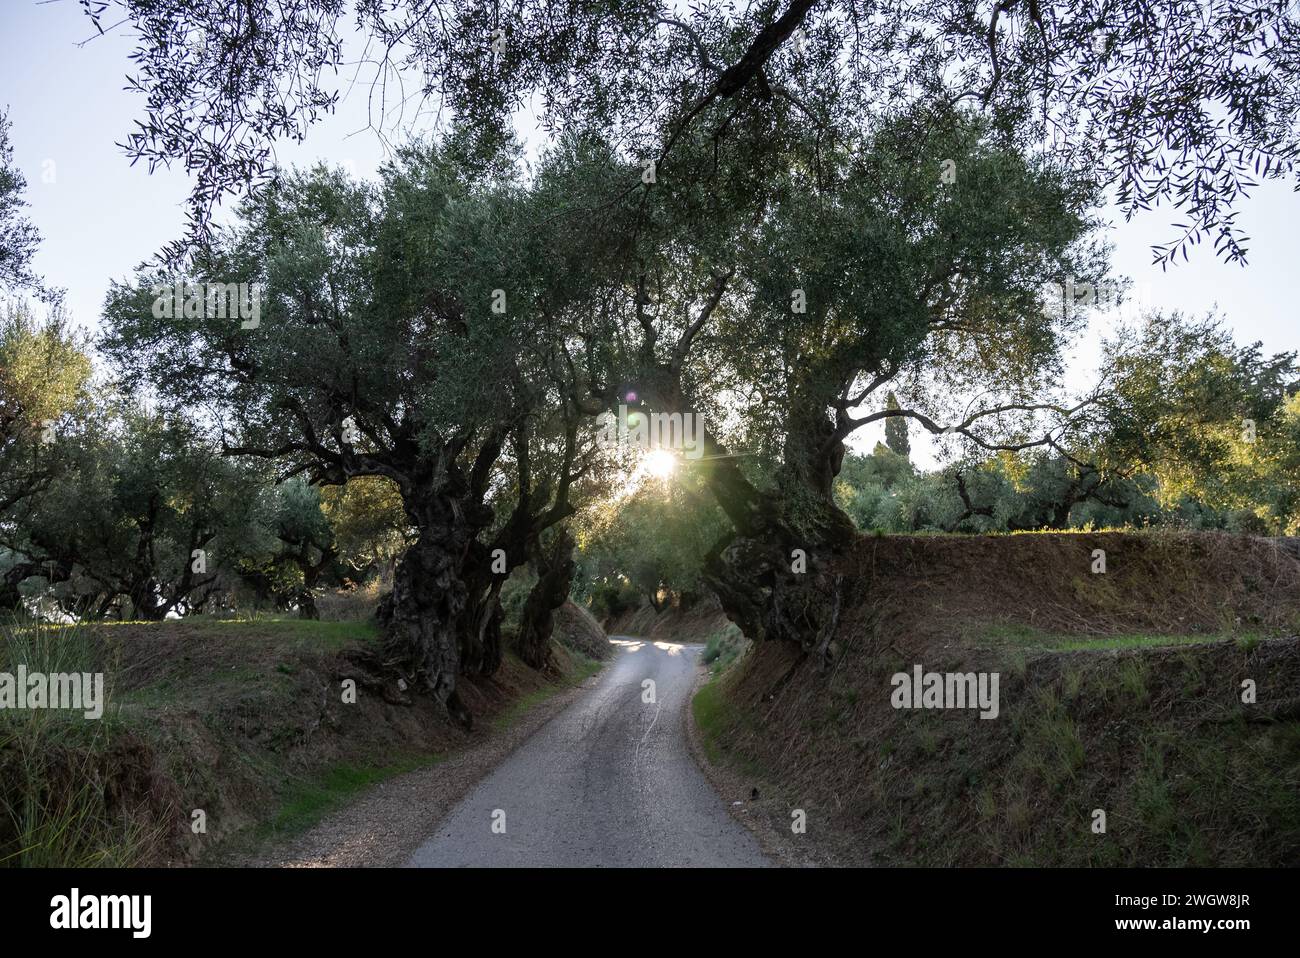 Der alte Olivenbaum im Park in Griechenland. Olivenhain auf dem Land der Insel Zakynthos. Olivenbäume im Olivenhain der griechischen Insel. O Stockfoto